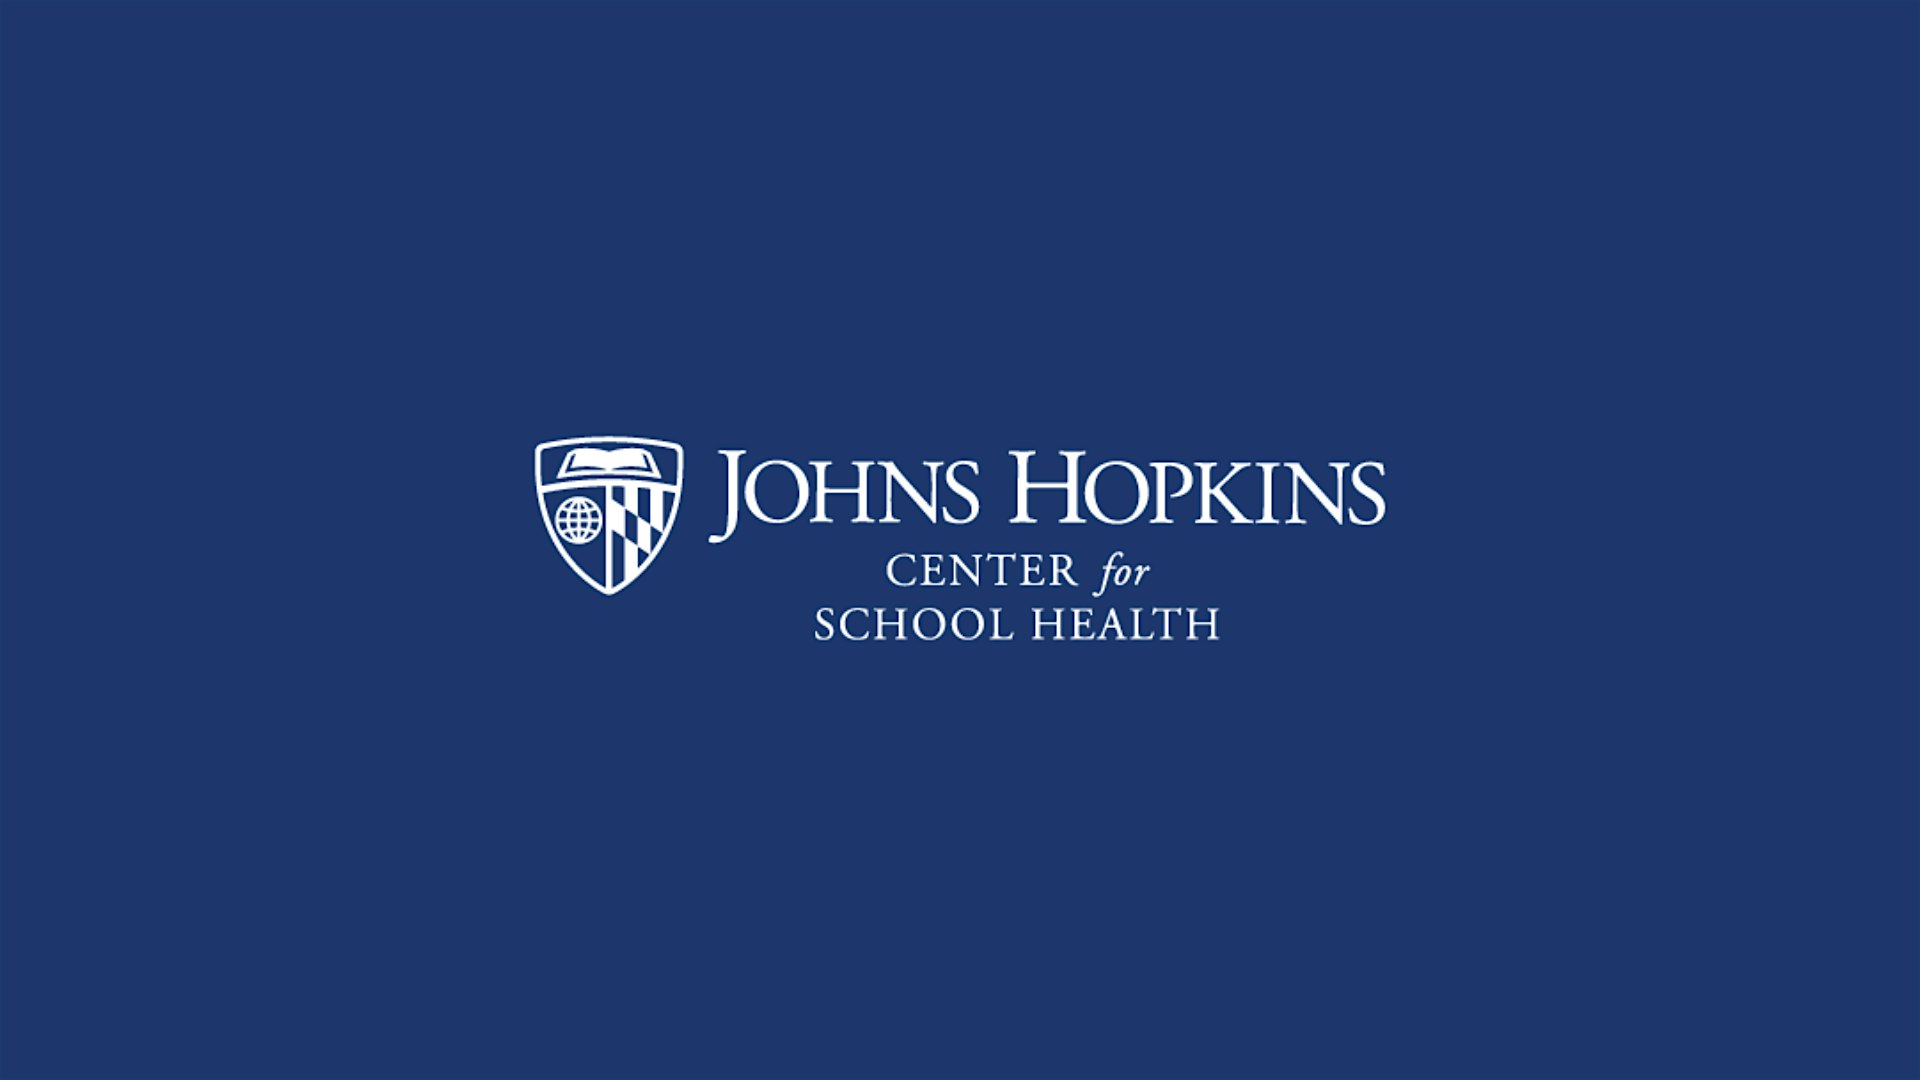 Center for School Health, Johns Hopkins University